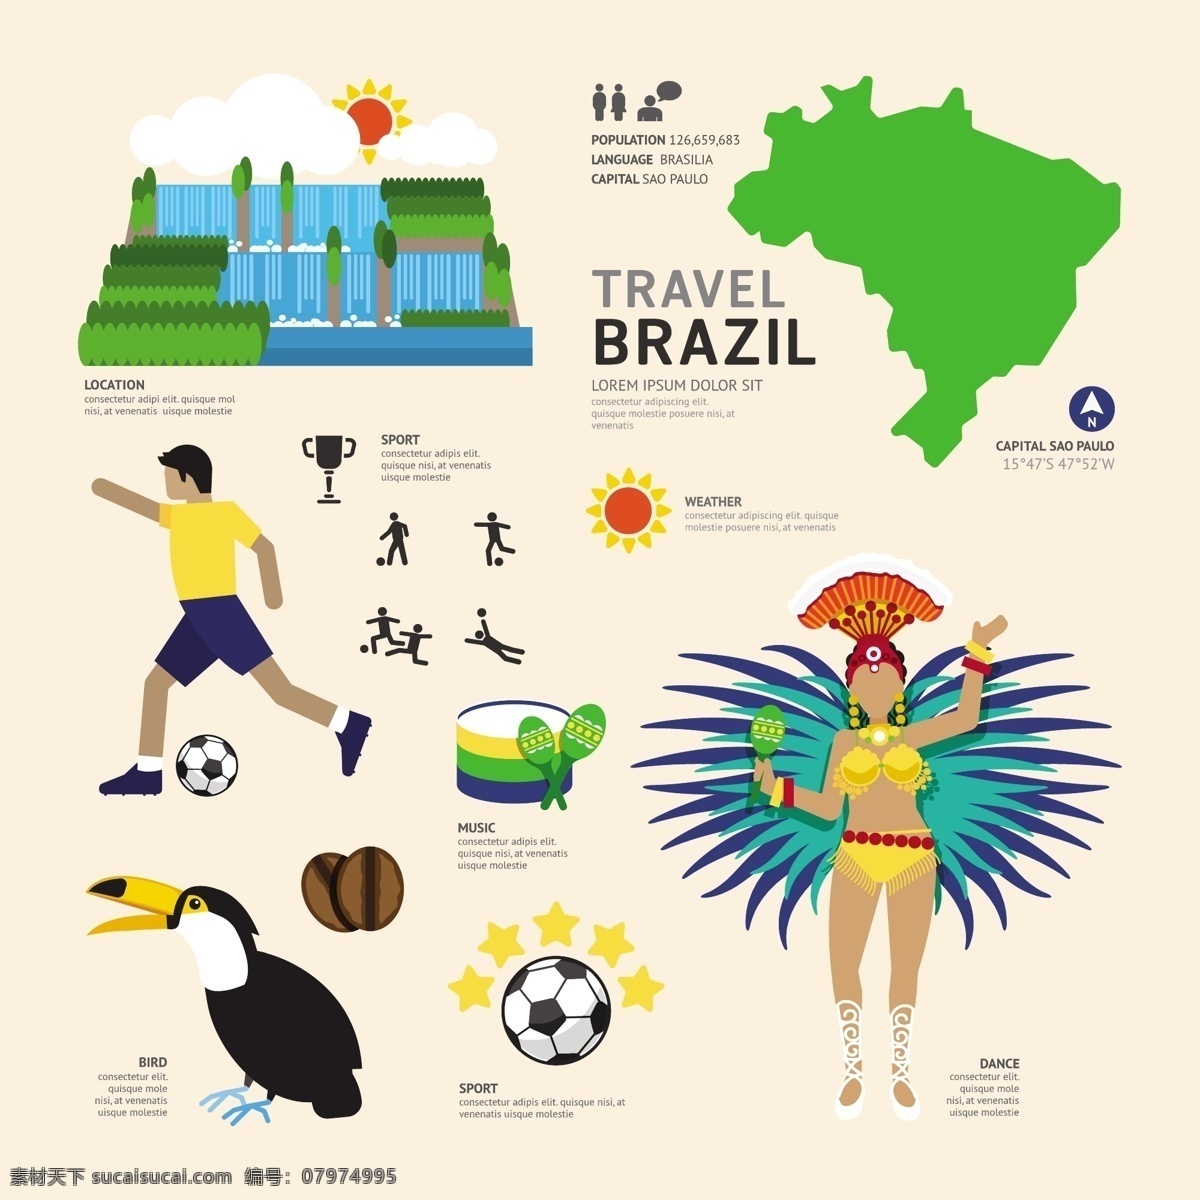 巴西文化元素 矢量素材 巴西旅游 旅行 旅游景点 著名景点 旅游图标 桑巴舞 巨嘴鸟 足球 扁平化图标 eps格式 卡通设计 白色